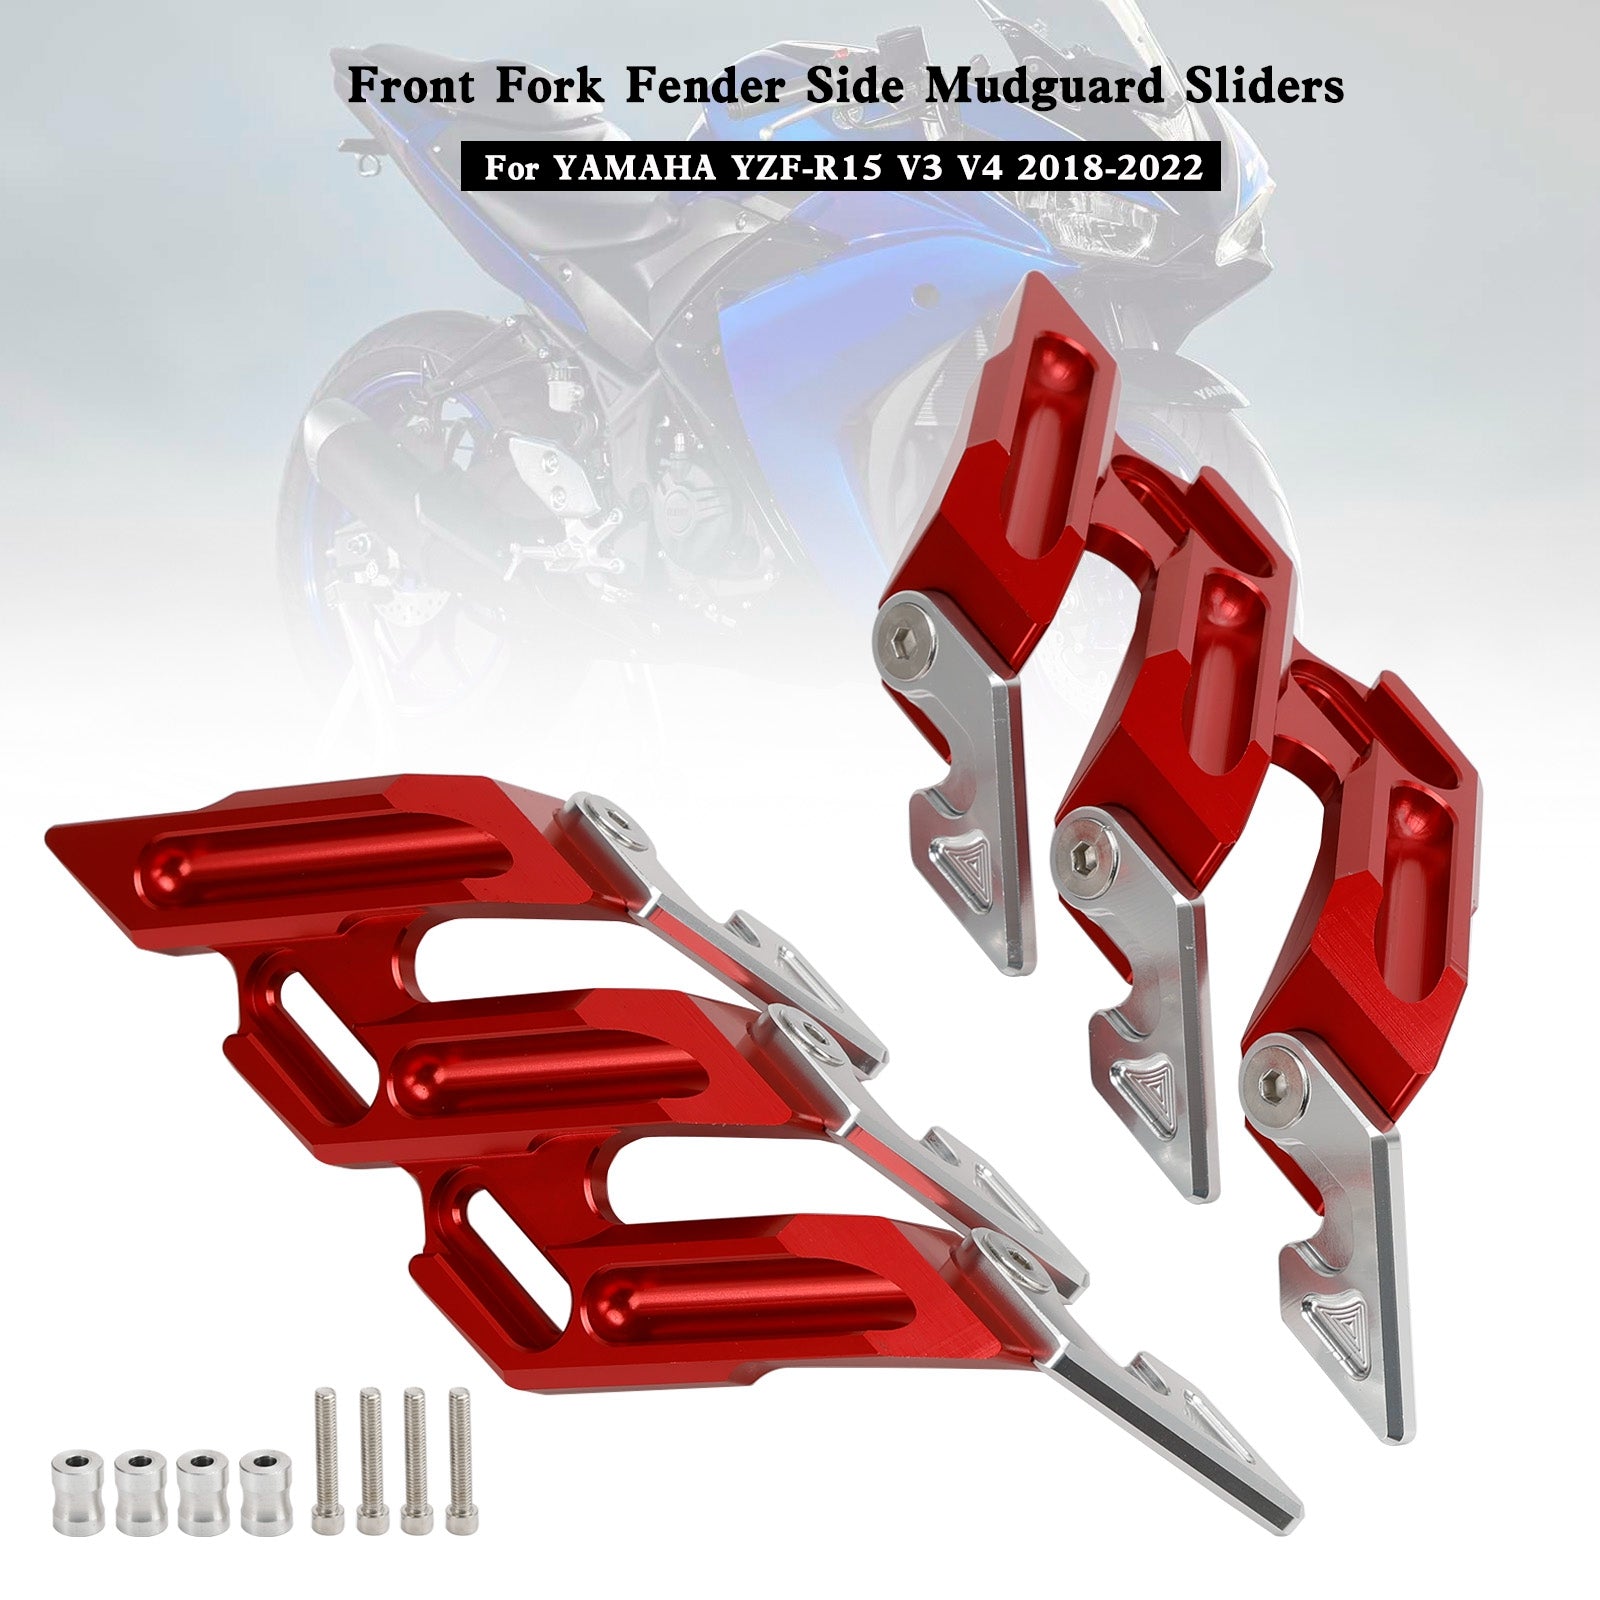 2018-2022 YAMAHA YZF-R15 V3 V4 CNC Front Fork Fender Side Mudguard Sliders